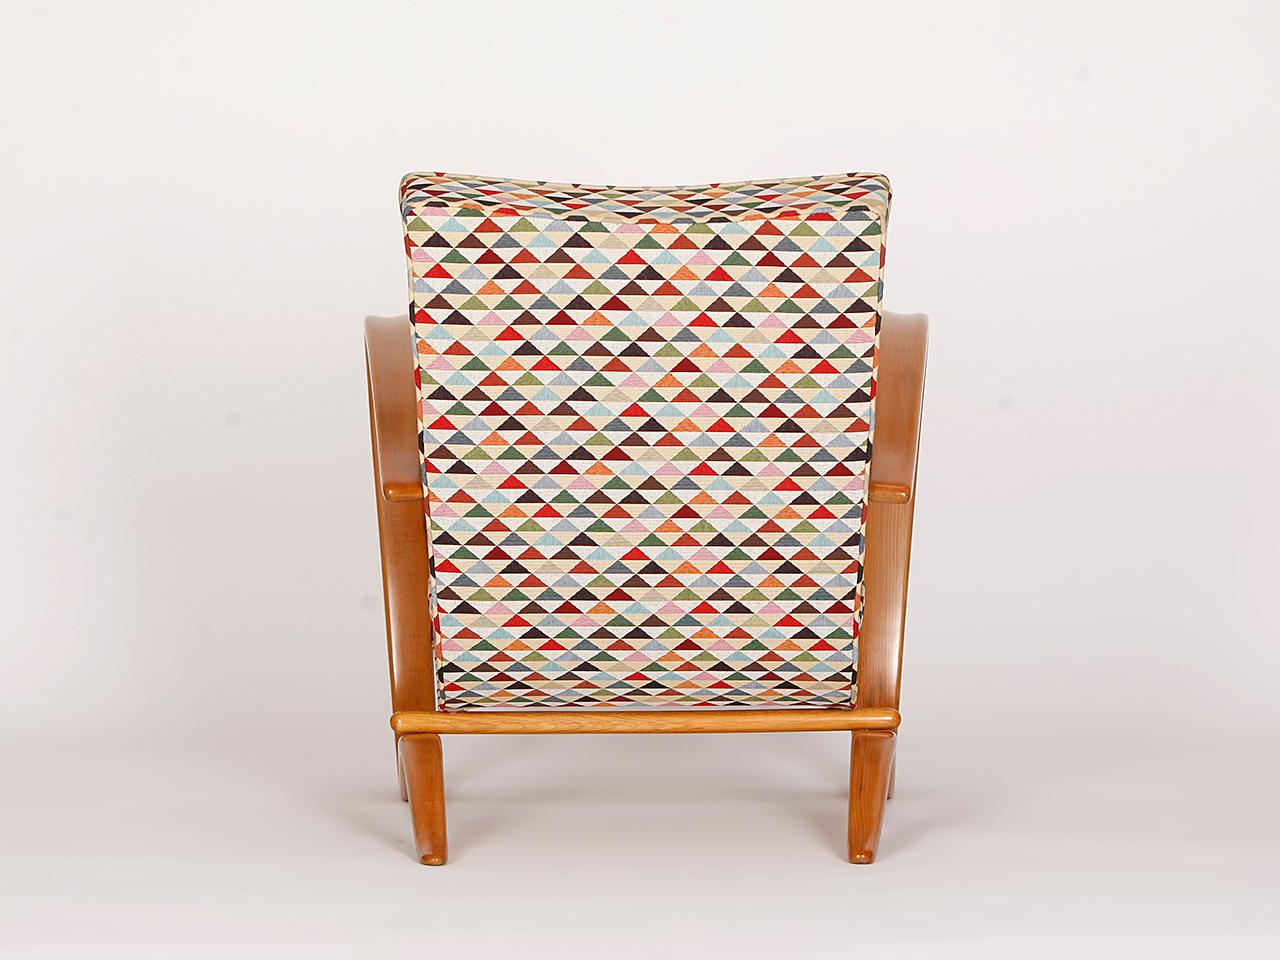 Art Deco Streamline Chair H-269 by Jindrich Halabala for Spojene UP Zavody, 1930s